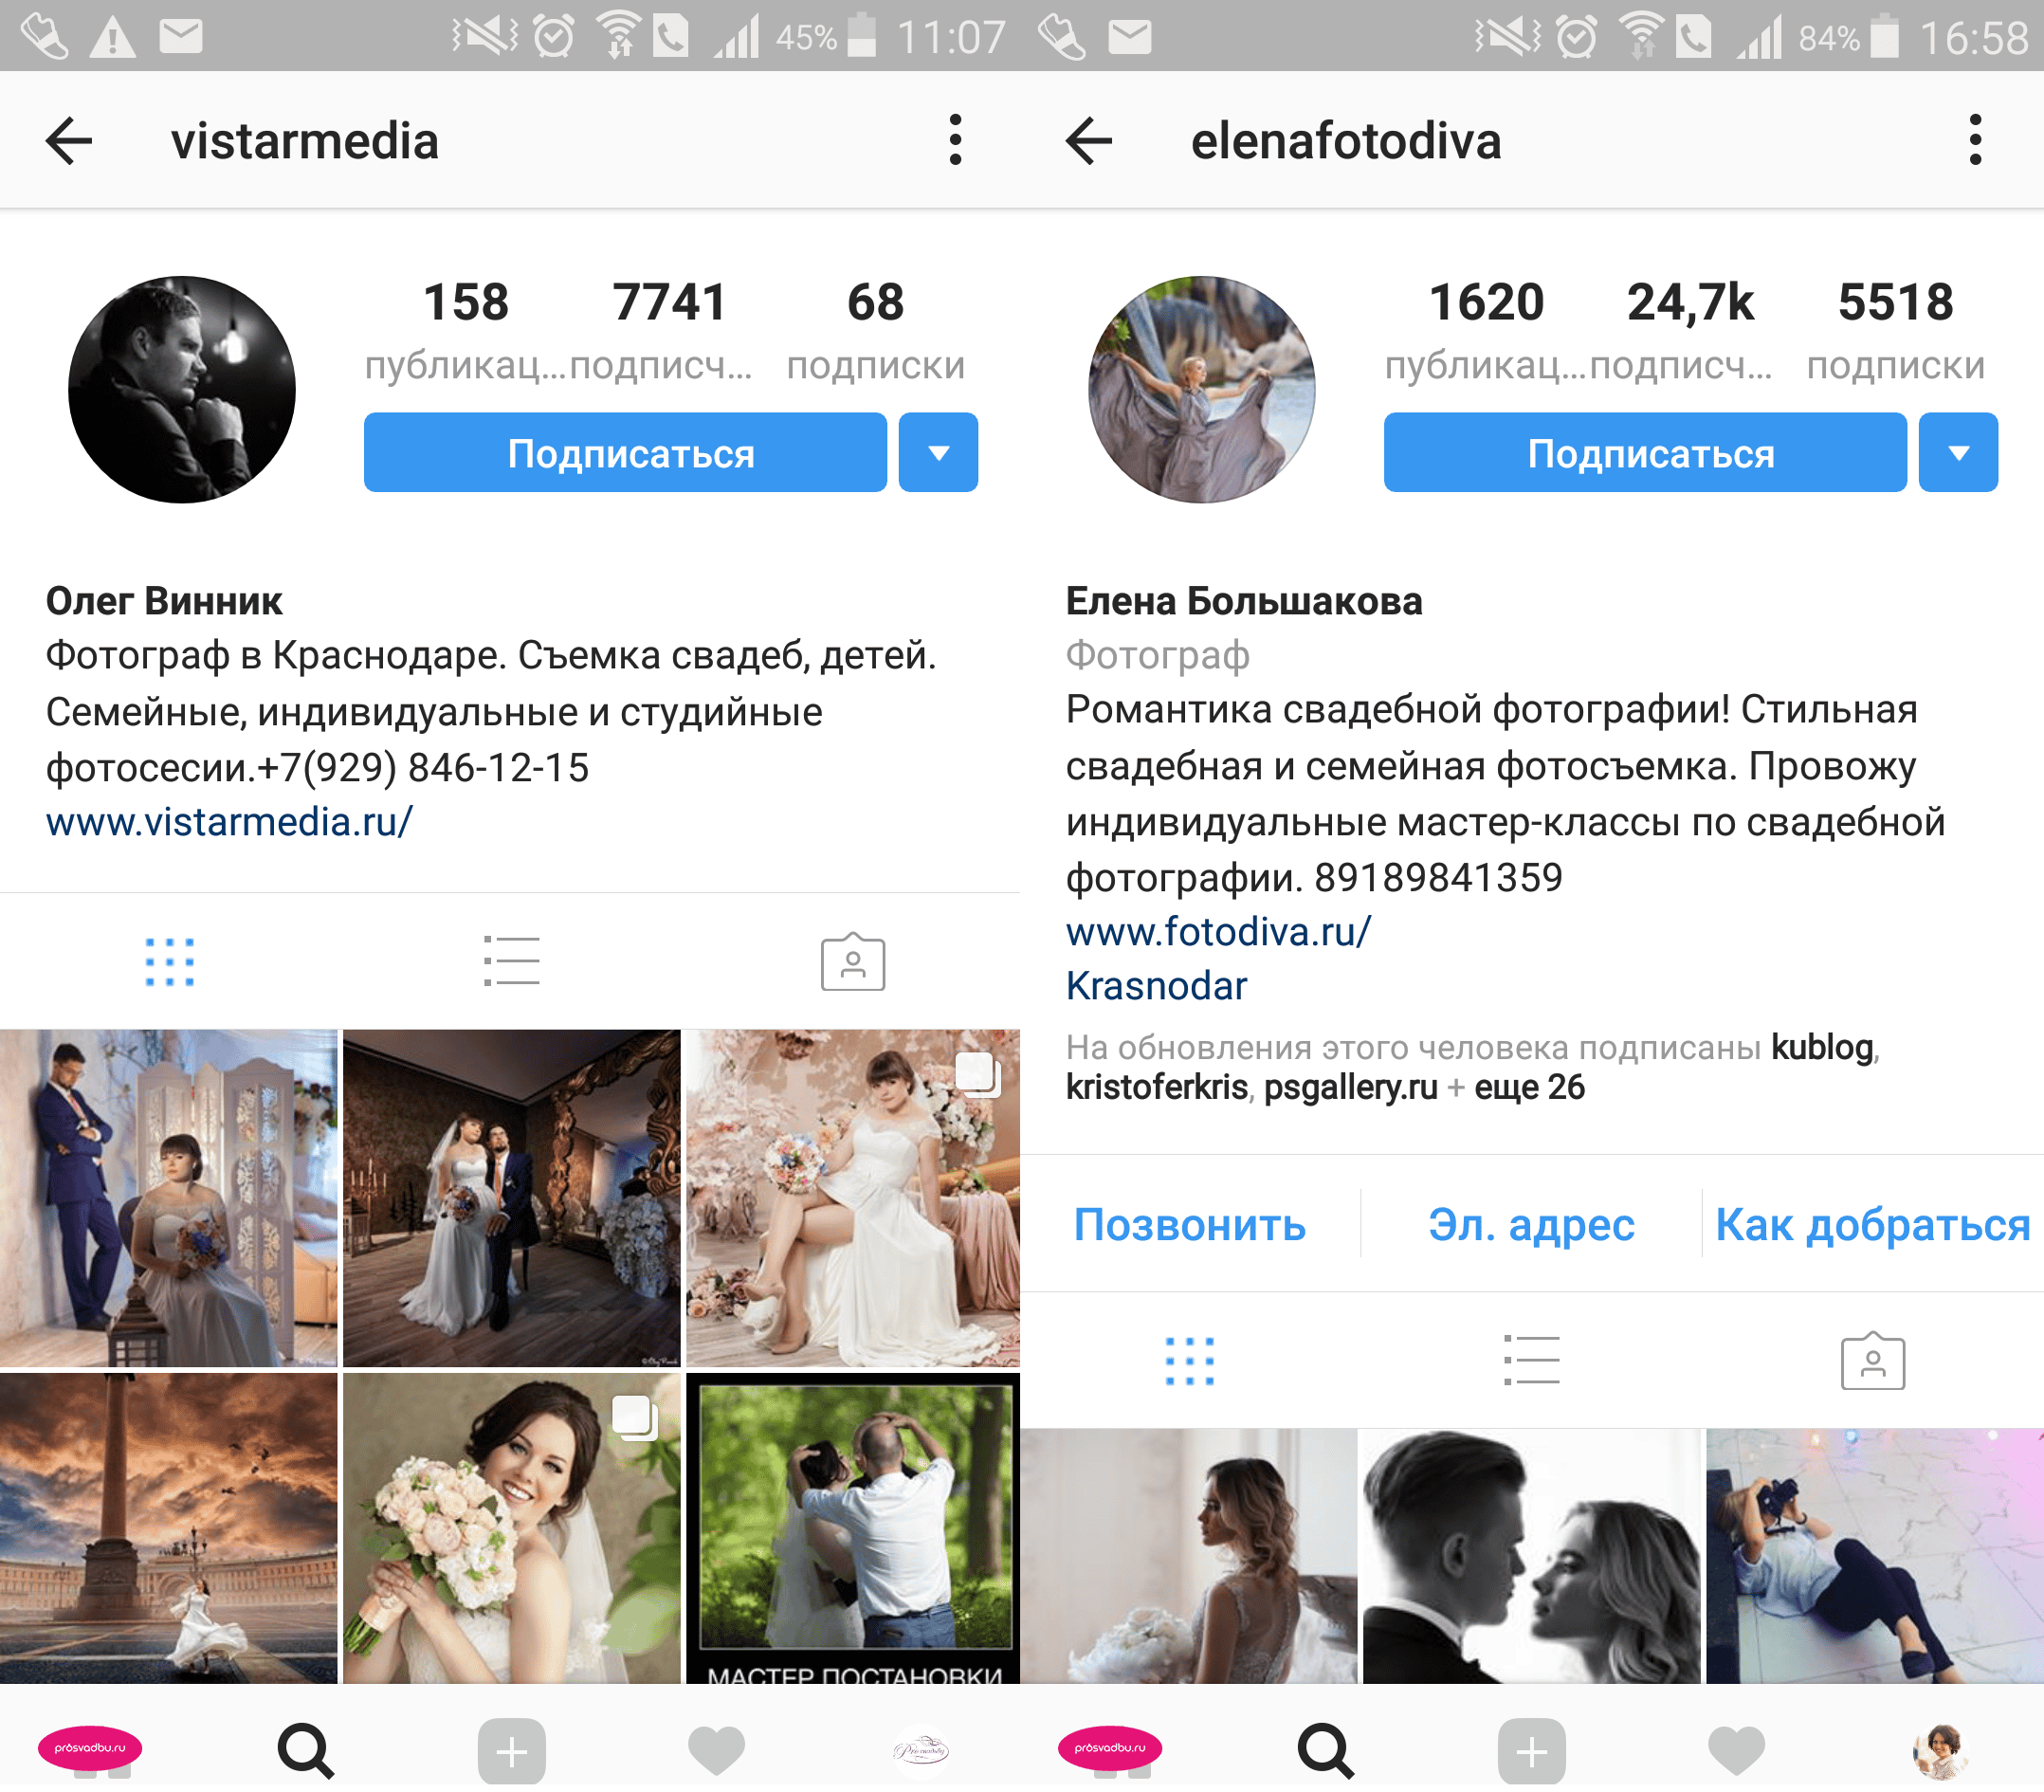 Бізнес весільних фотографів в Instagram. Що у них?